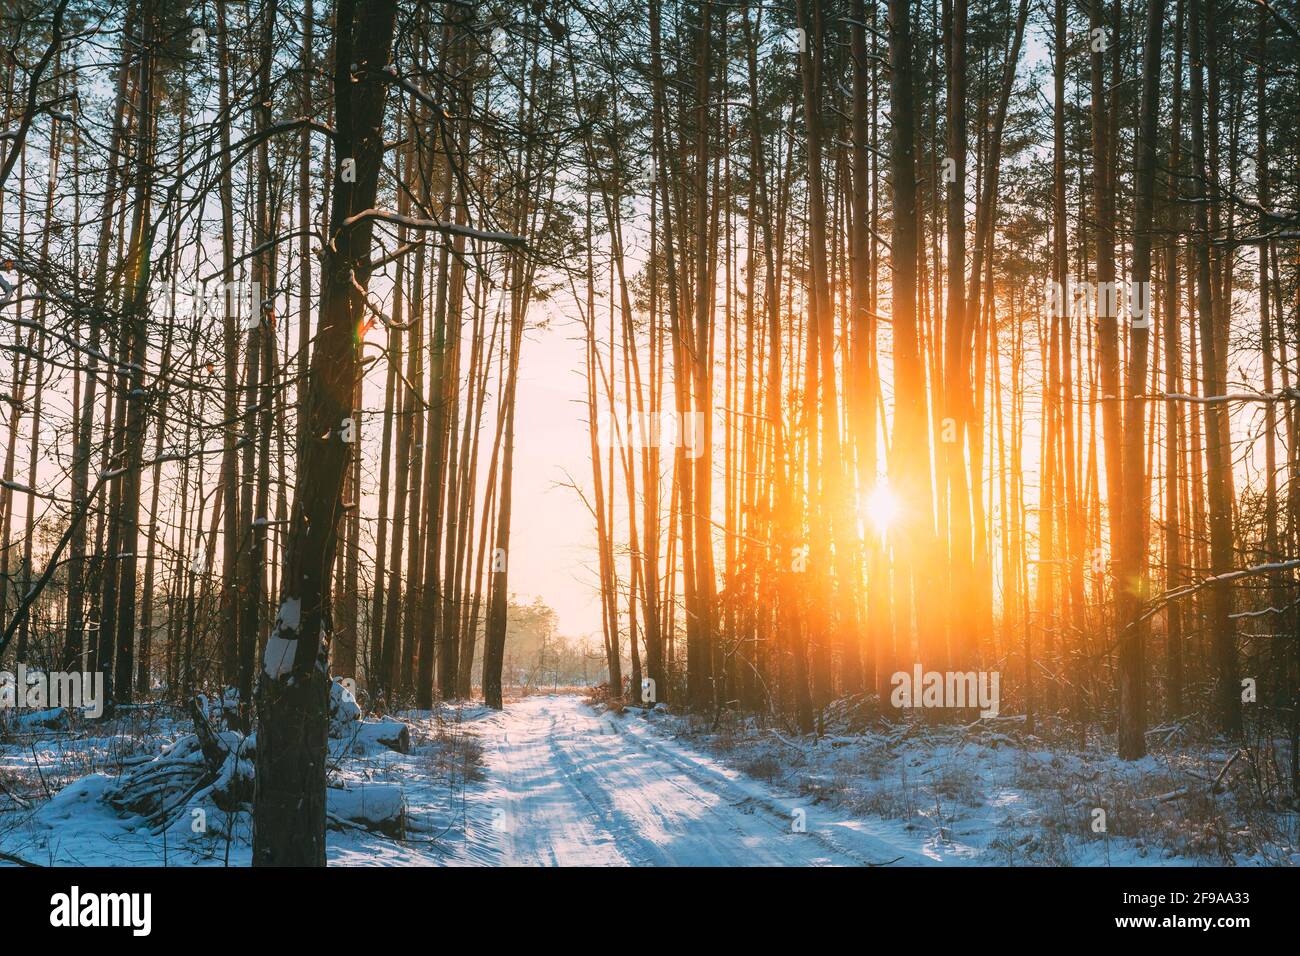 Route de campagne dans la forêt de pins d'hiver. Soleil lumière du soleil à travers les arbres dégelés Trunks Woods en hiver Snowy Conify Forest Landscape Banque D'Images